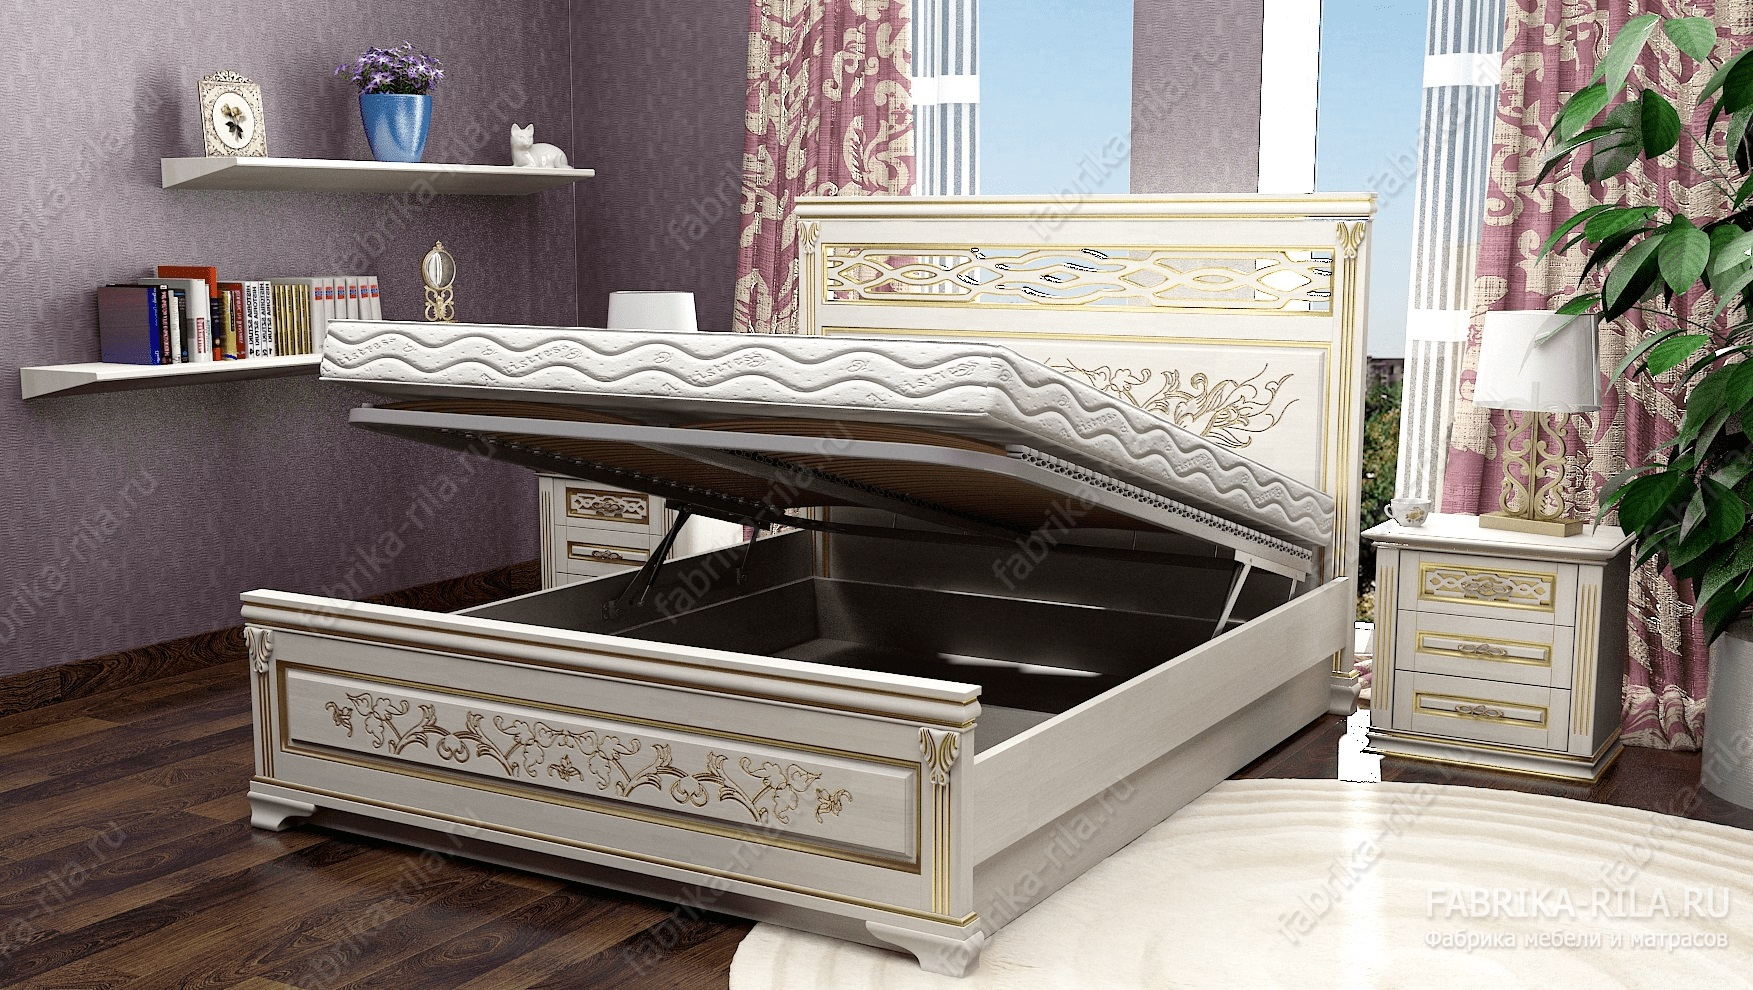 Кровать Lirоna 3 — 90x190 см. из березы